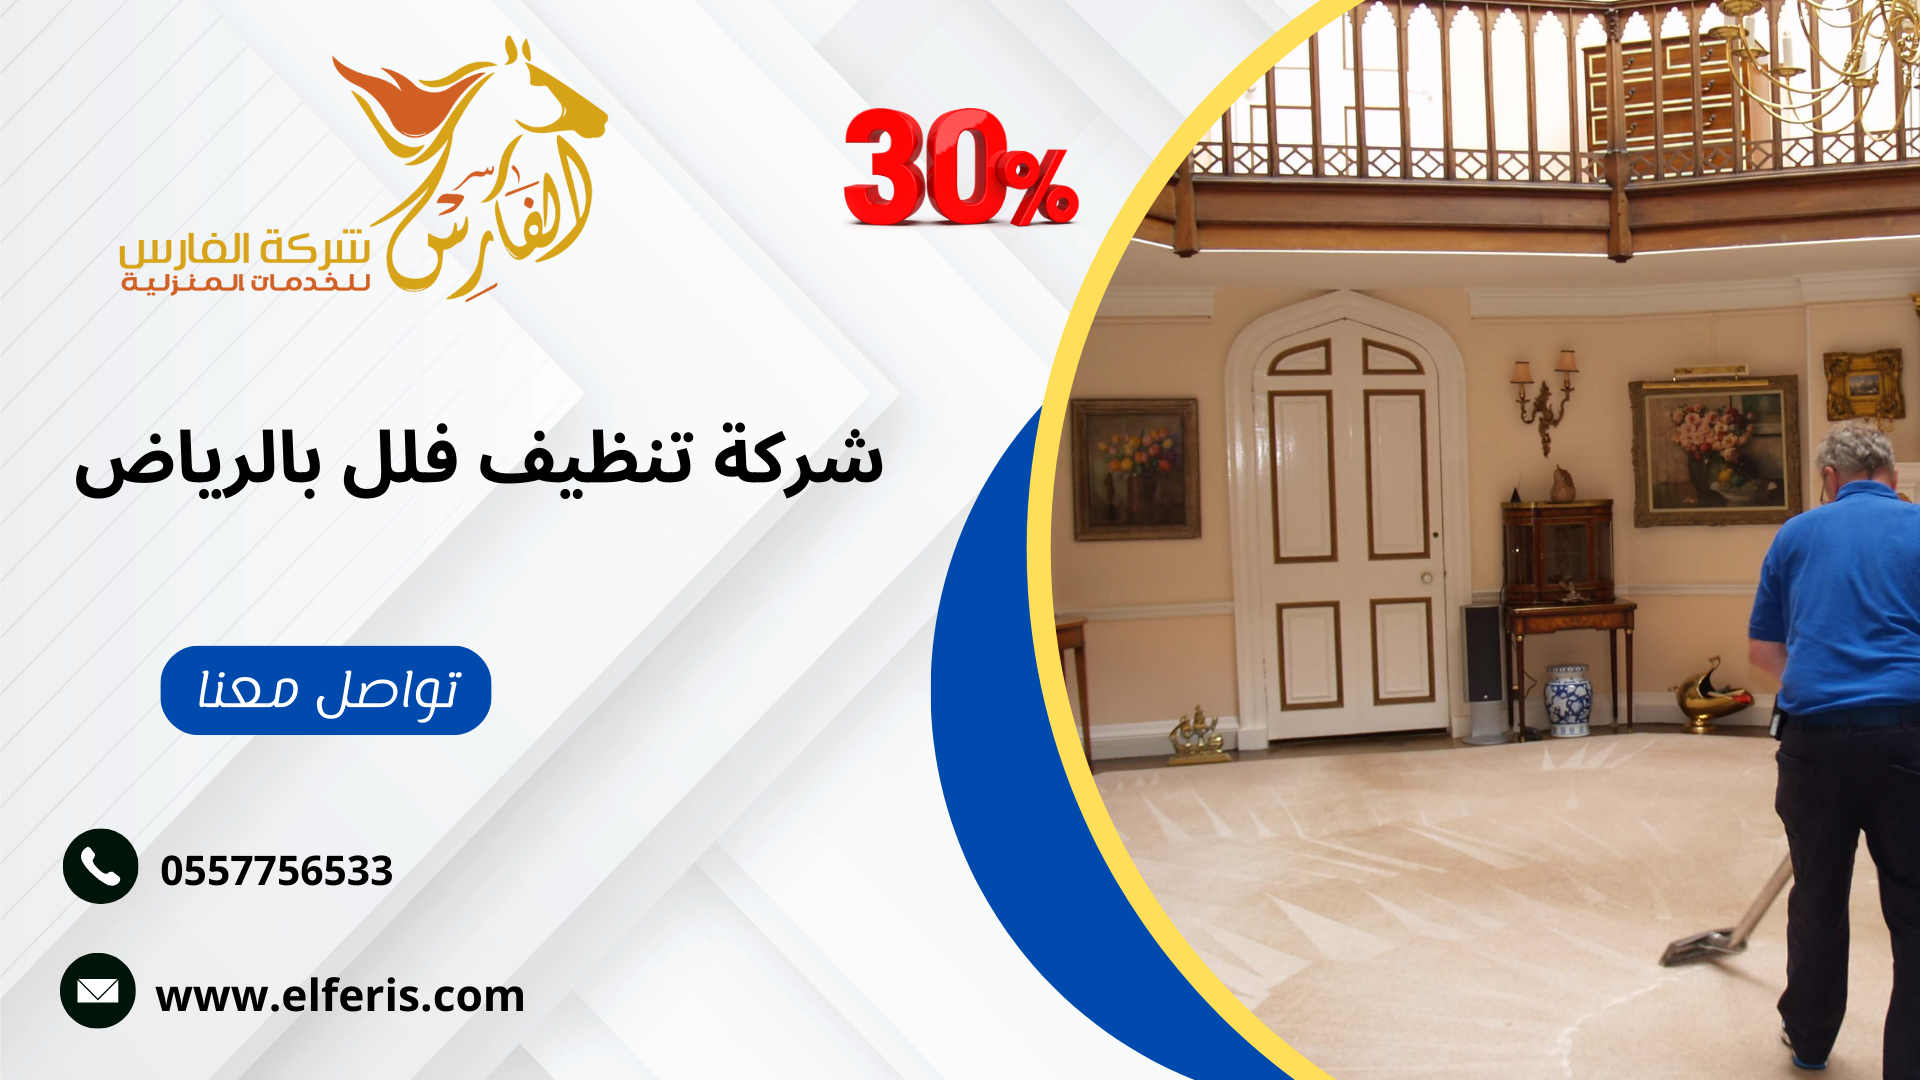 من افضل 10 شركات في الرياض تعمل في مجال الخدمات المنزلية هي شركة الفارس تقدم خصومات 30% لكل العملاء الجدد